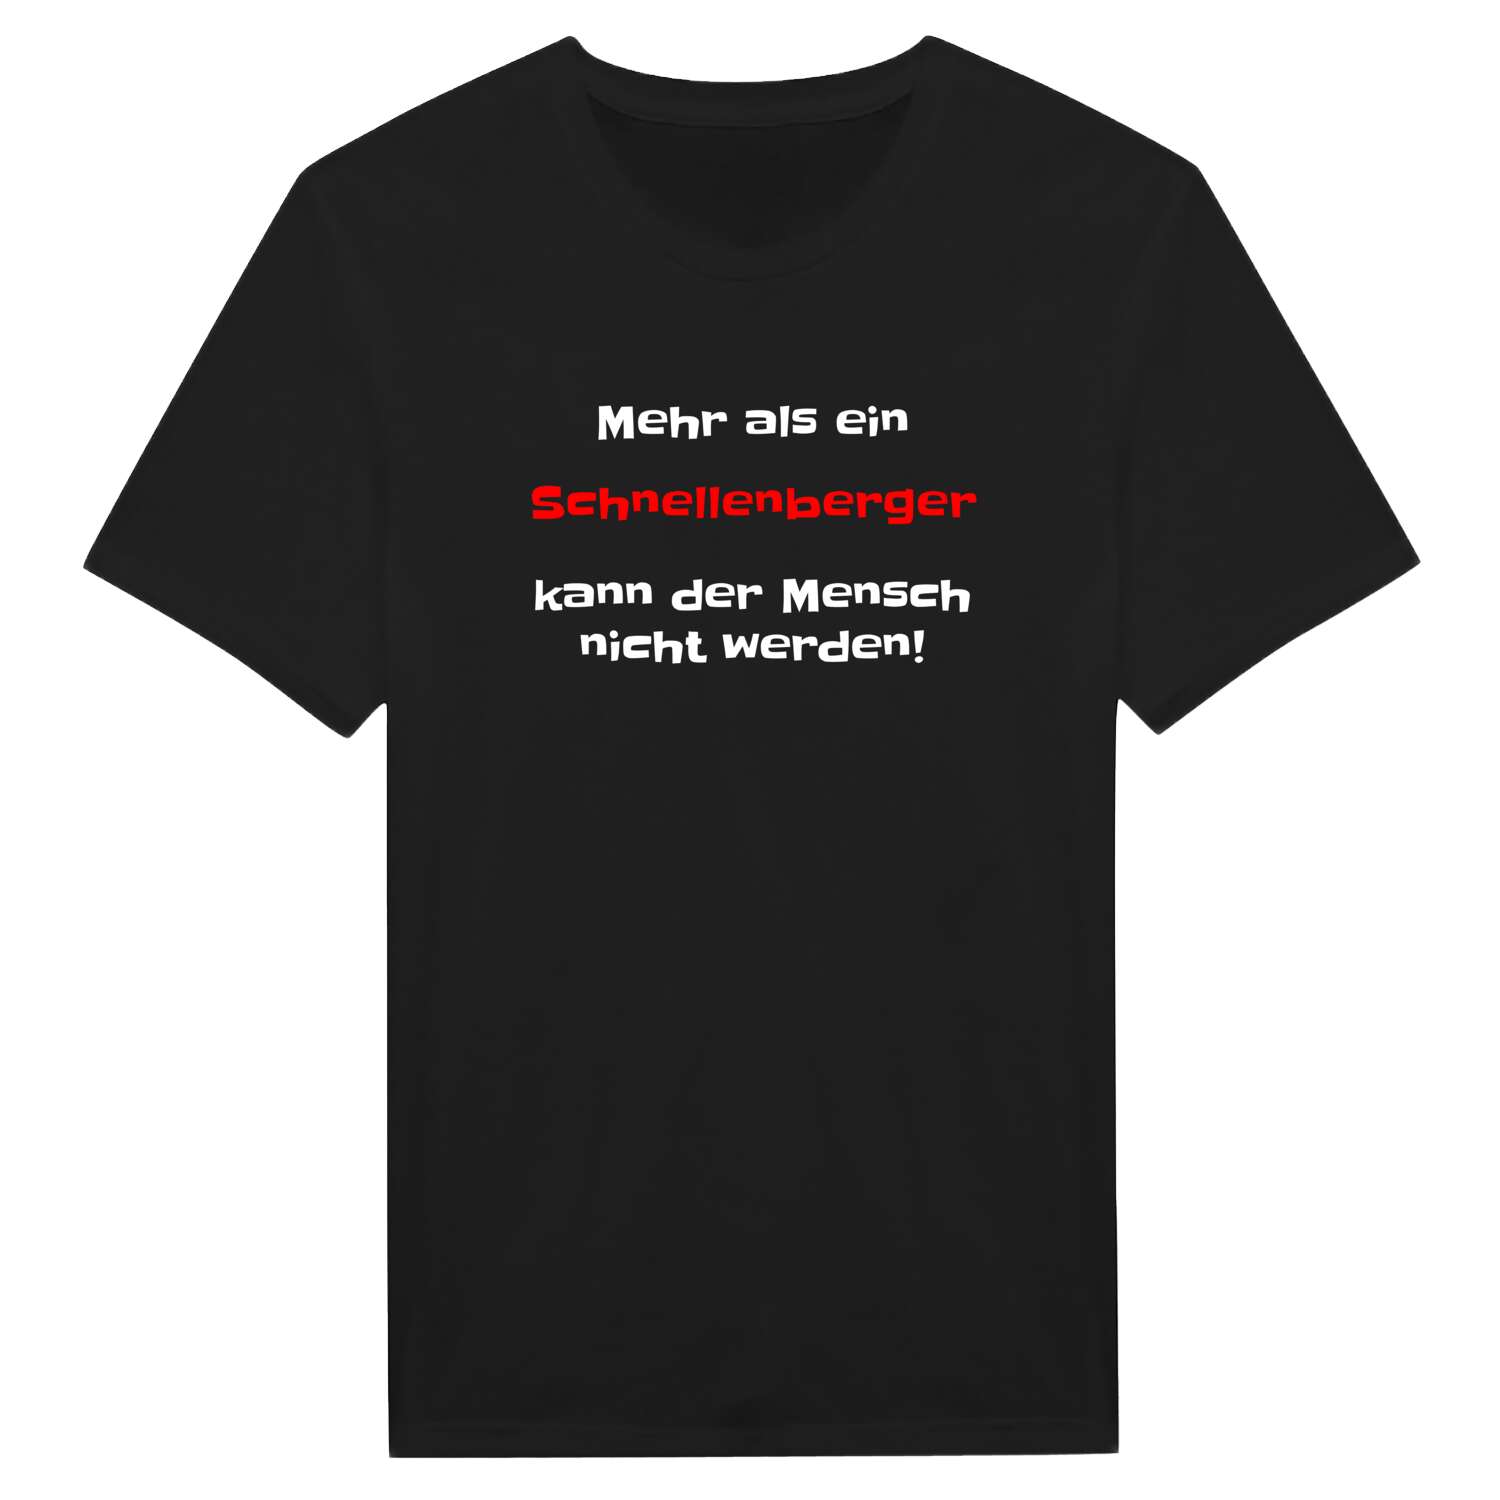 Schnellenberg T-Shirt »Mehr als ein«